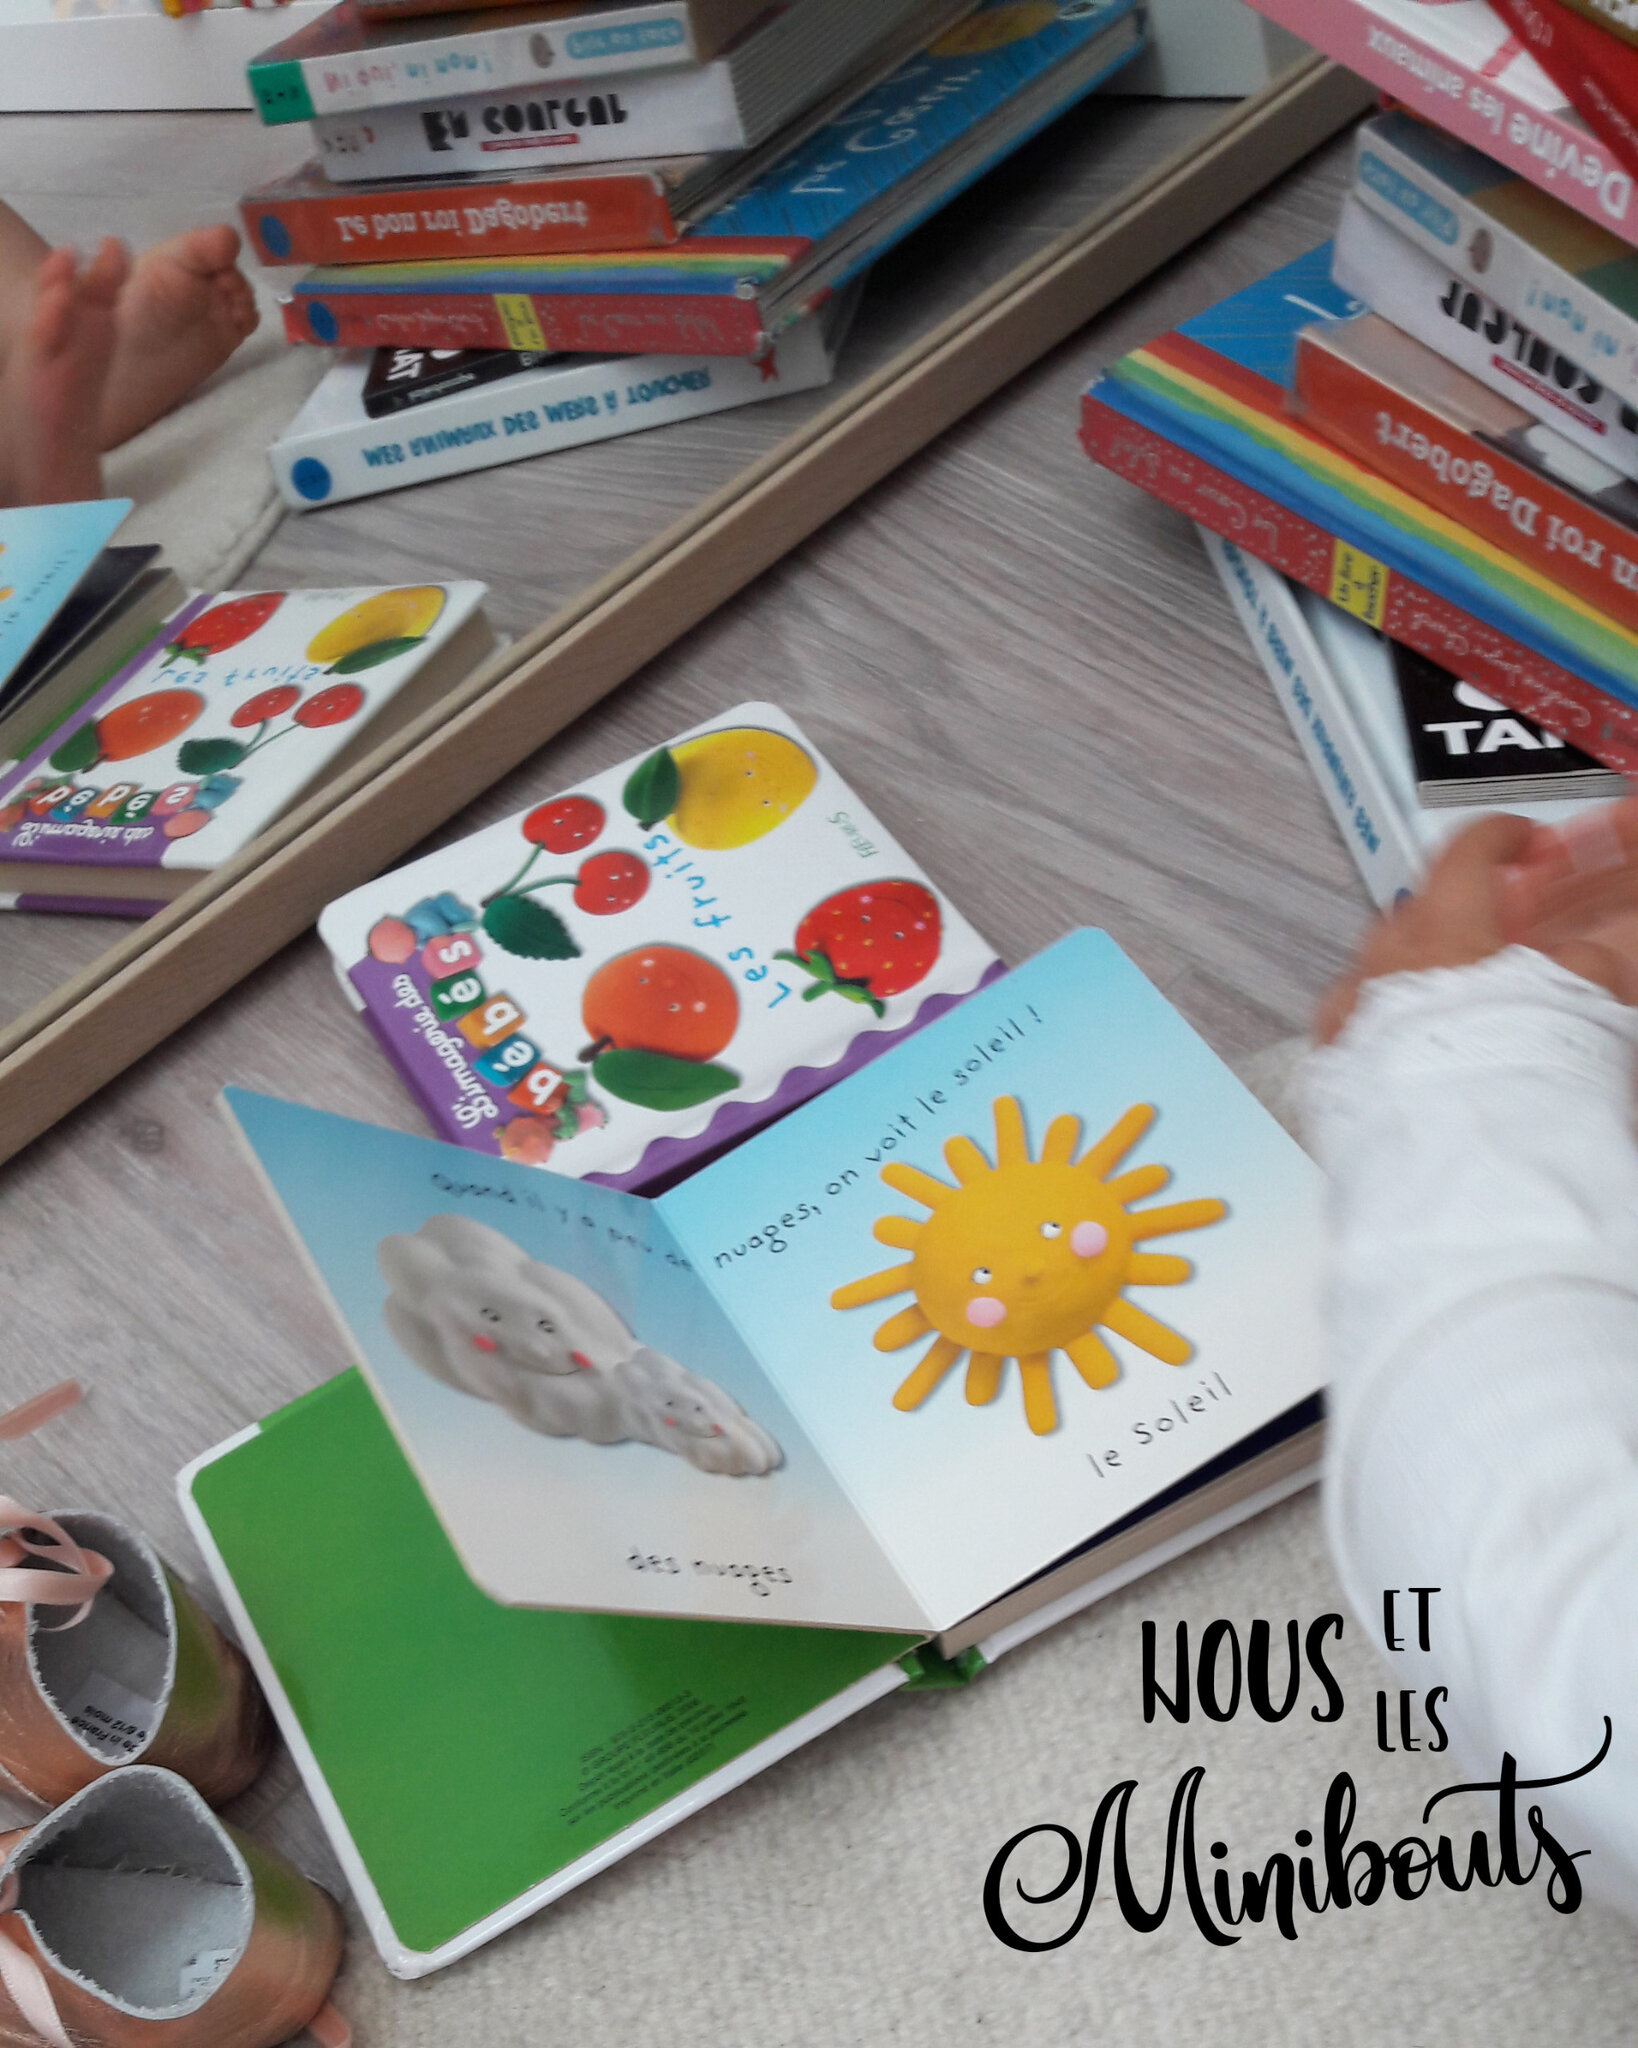 Livre de Contraste Pour Bébés: Montessori Livre de 0 A 3 Ans Idéal